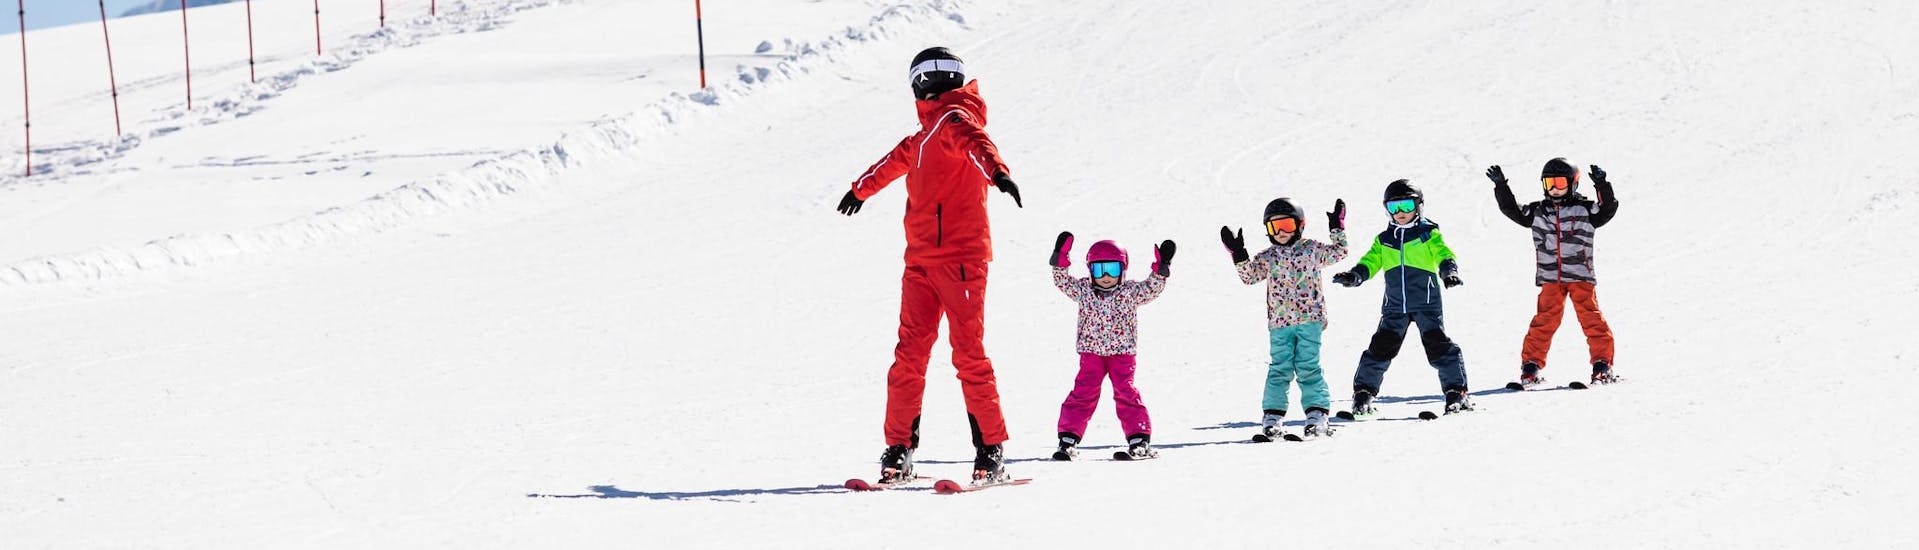 Moniteur de ski et enfants profitent d'une leçon de ski dans une école de ski près de Landsberg.